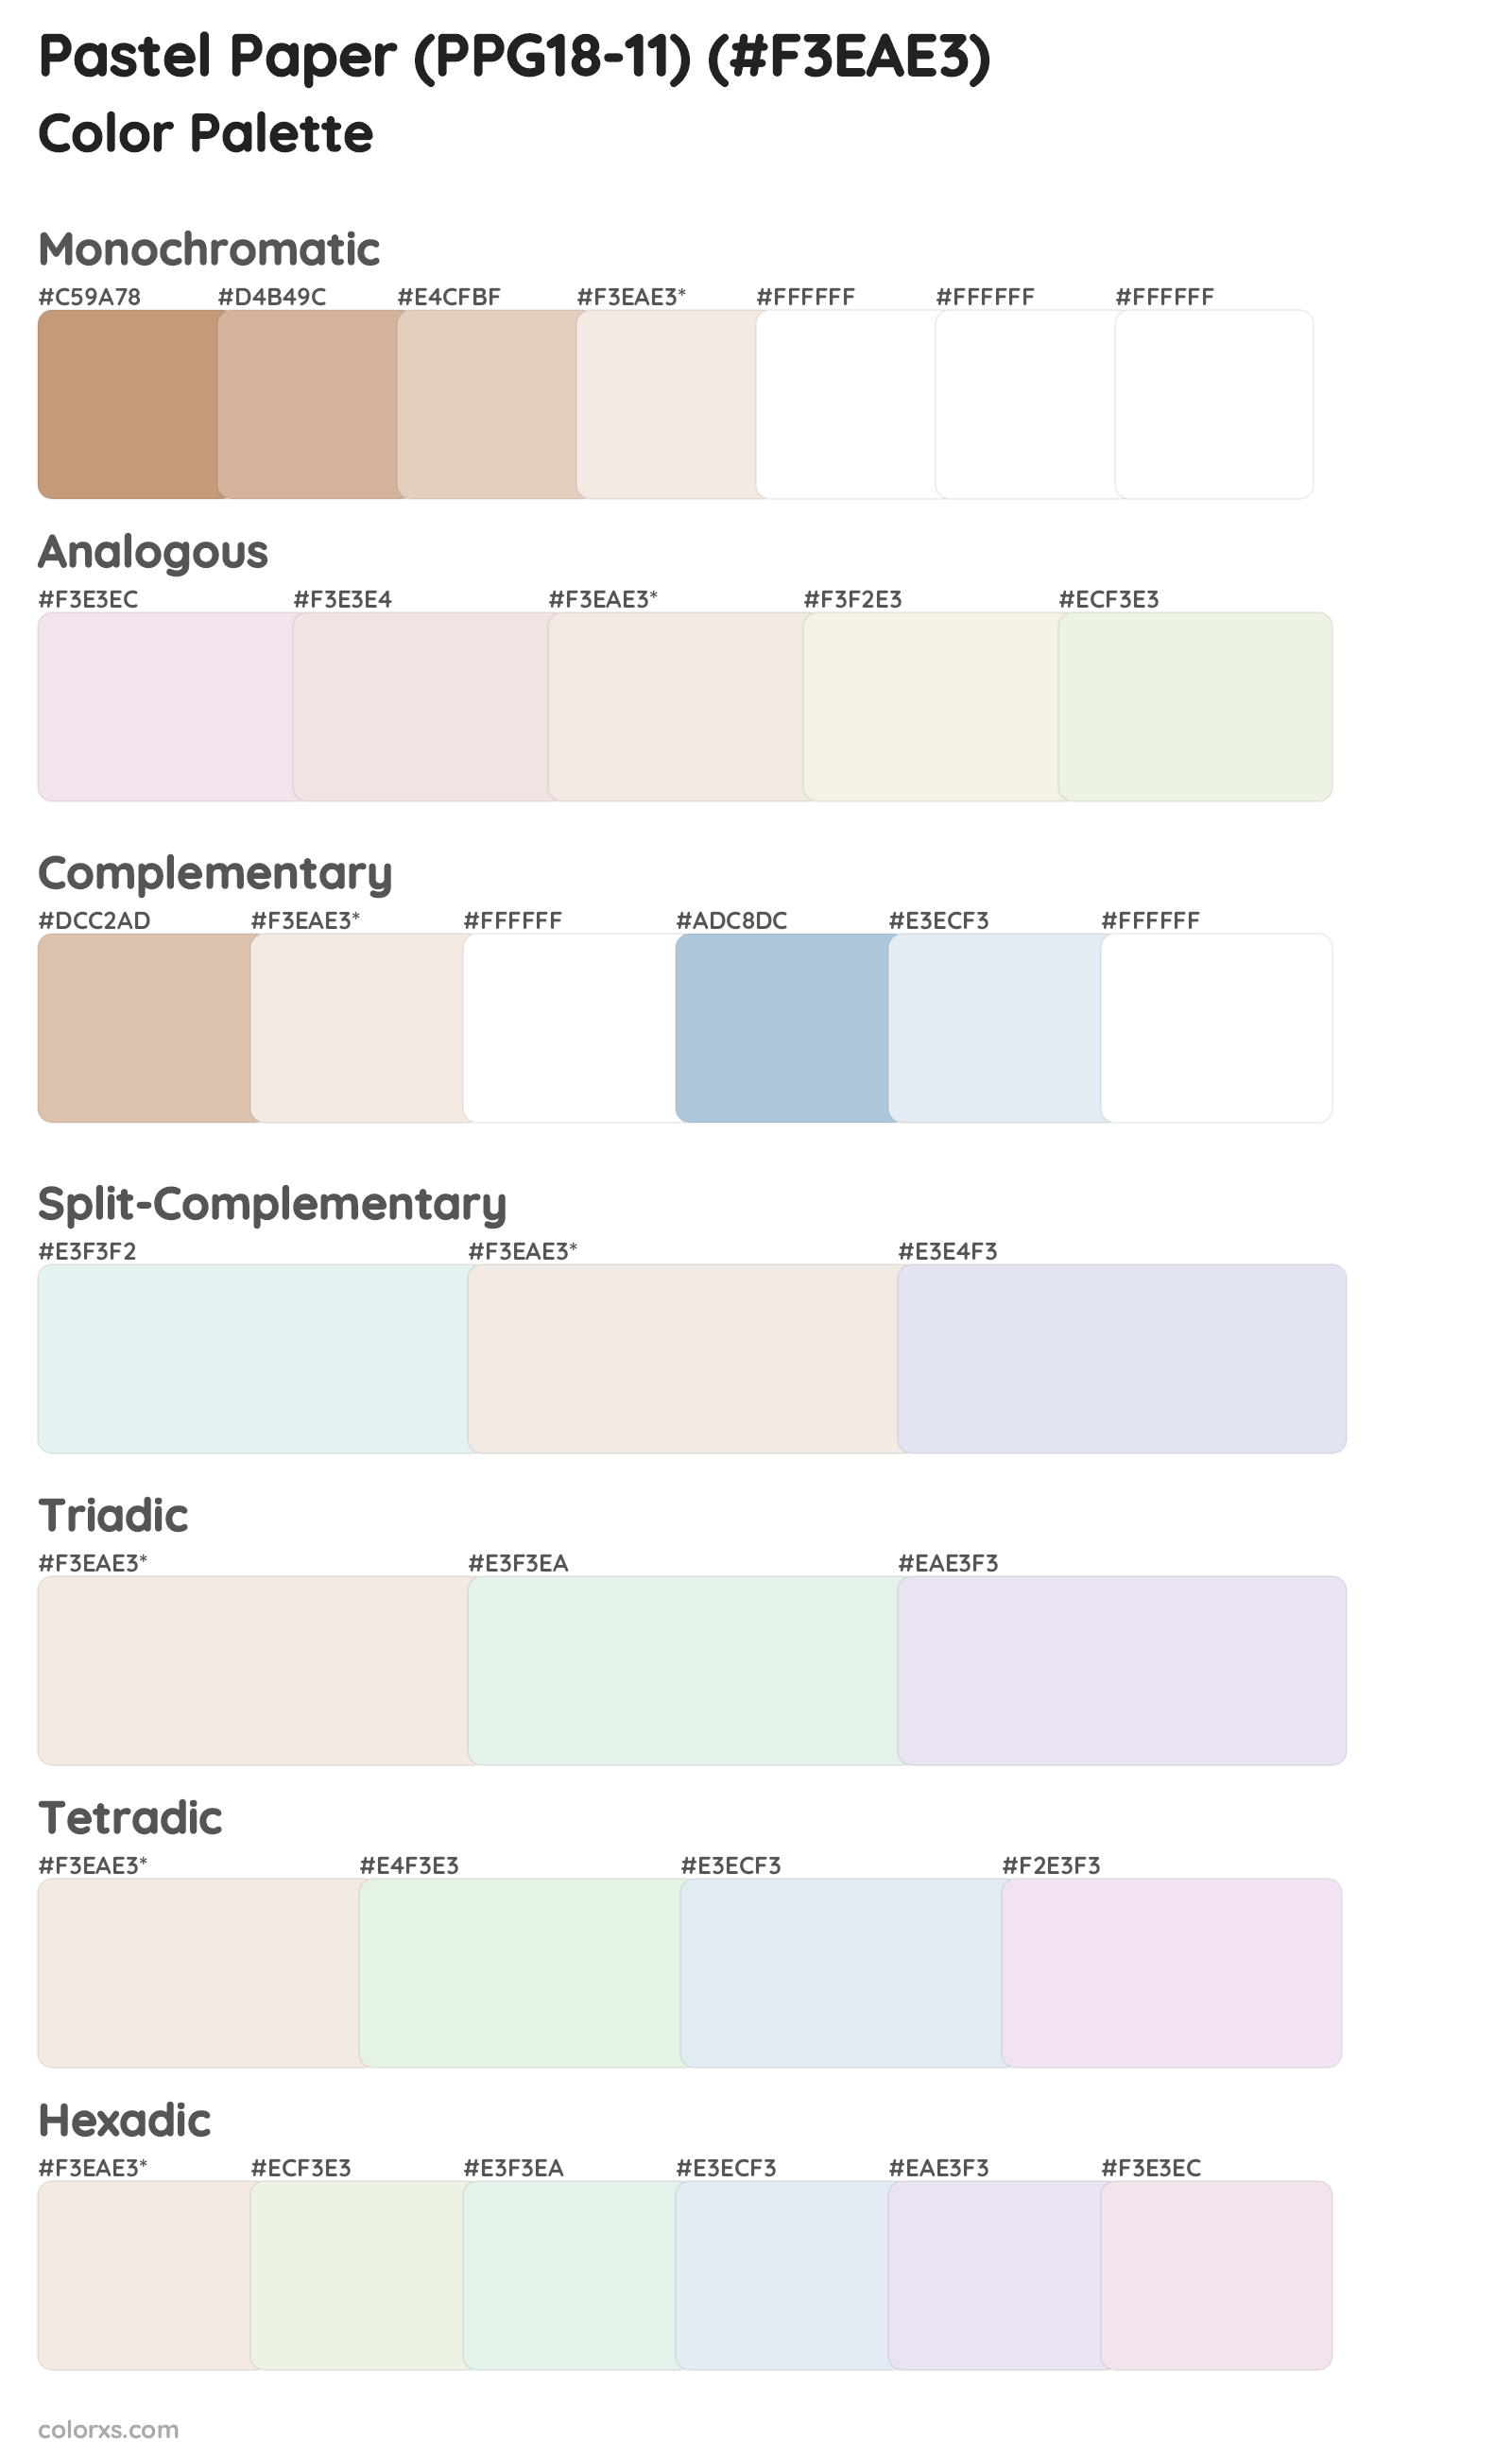 Pastel Paper (PPG18-11) Color Scheme Palettes